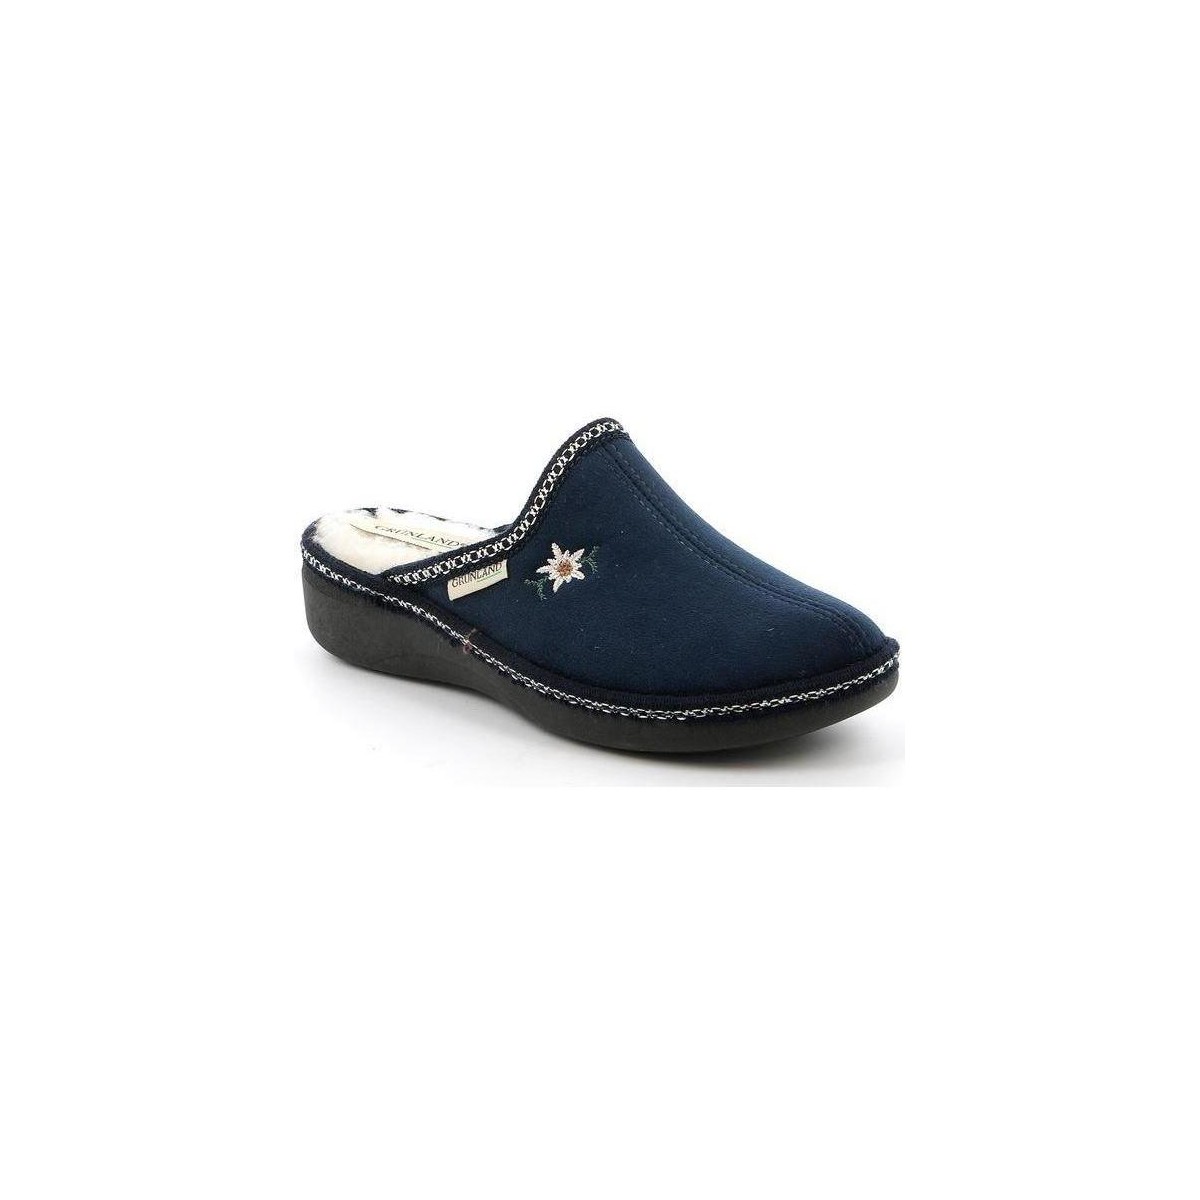 Schuhe Damen Pantoffel Grunland DSG-CI0835 Blau